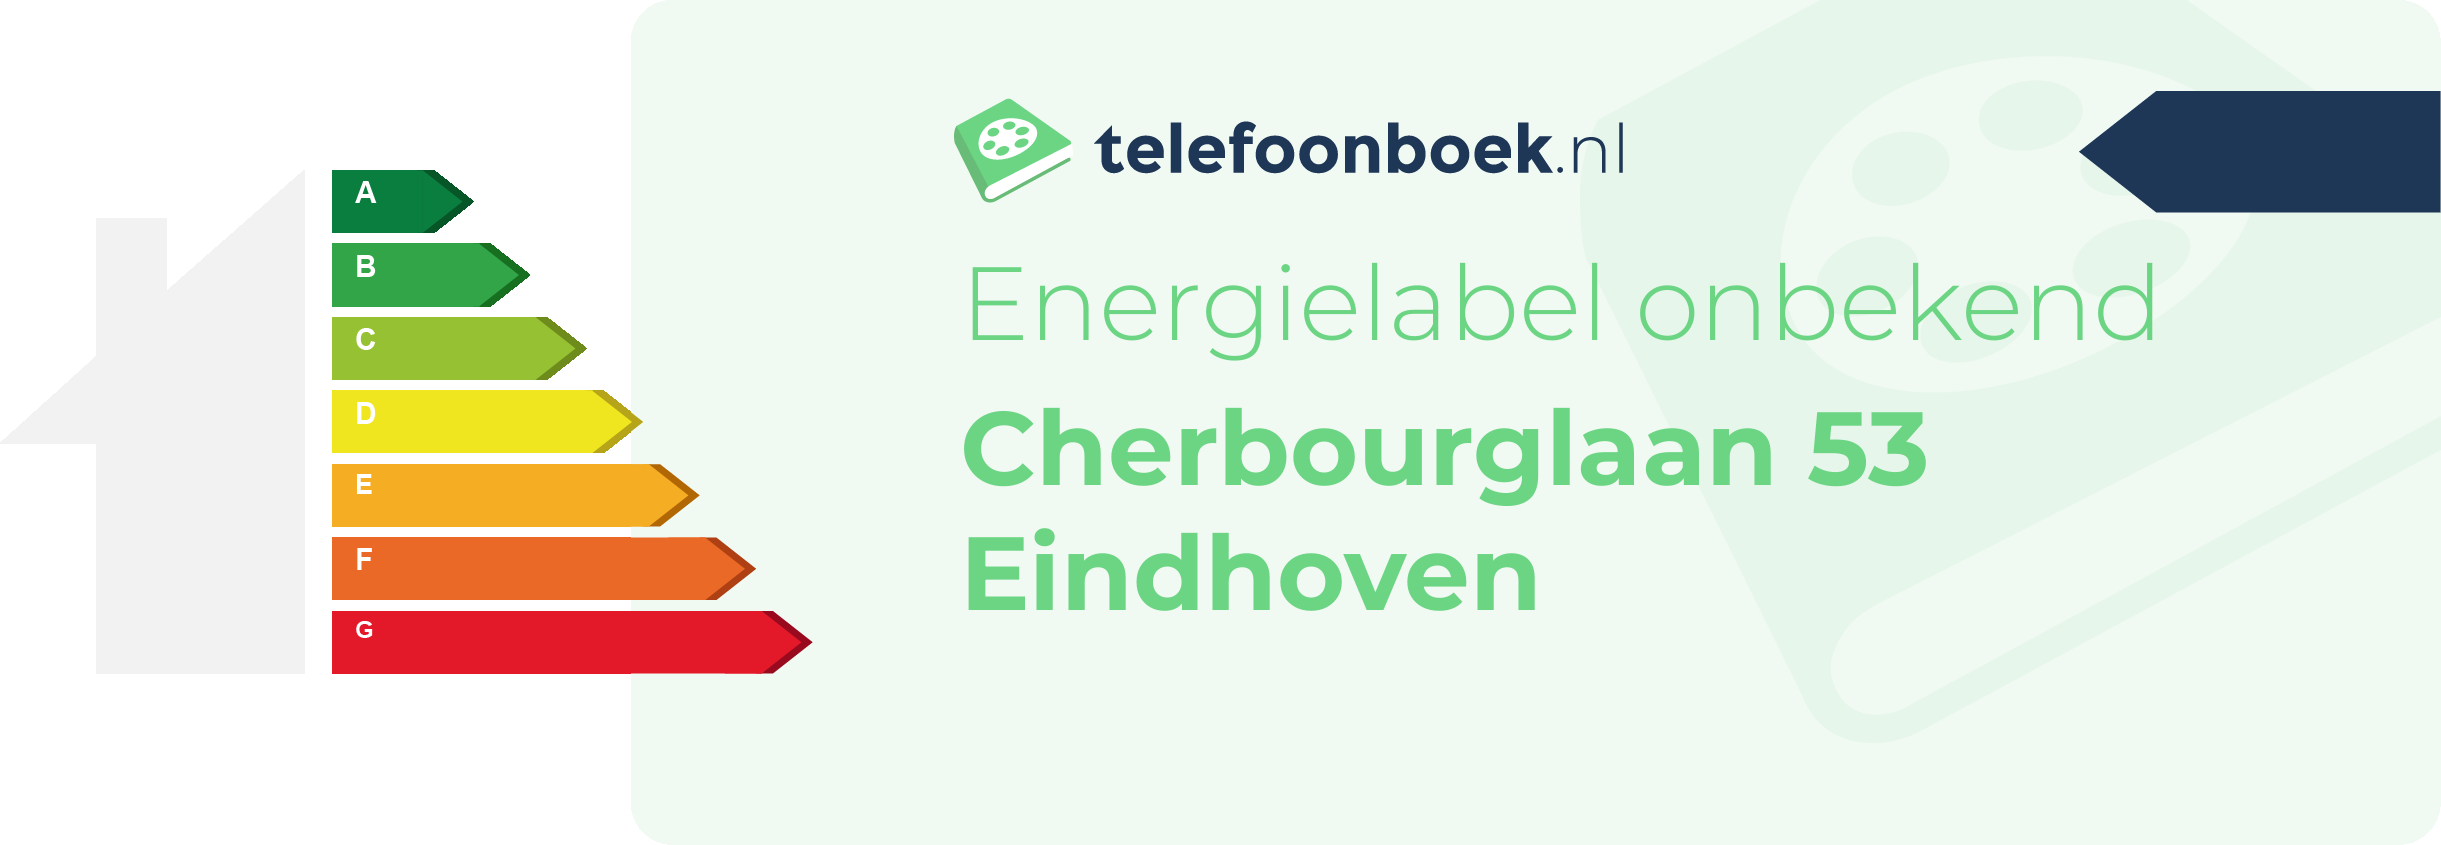 Energielabel Cherbourglaan 53 Eindhoven